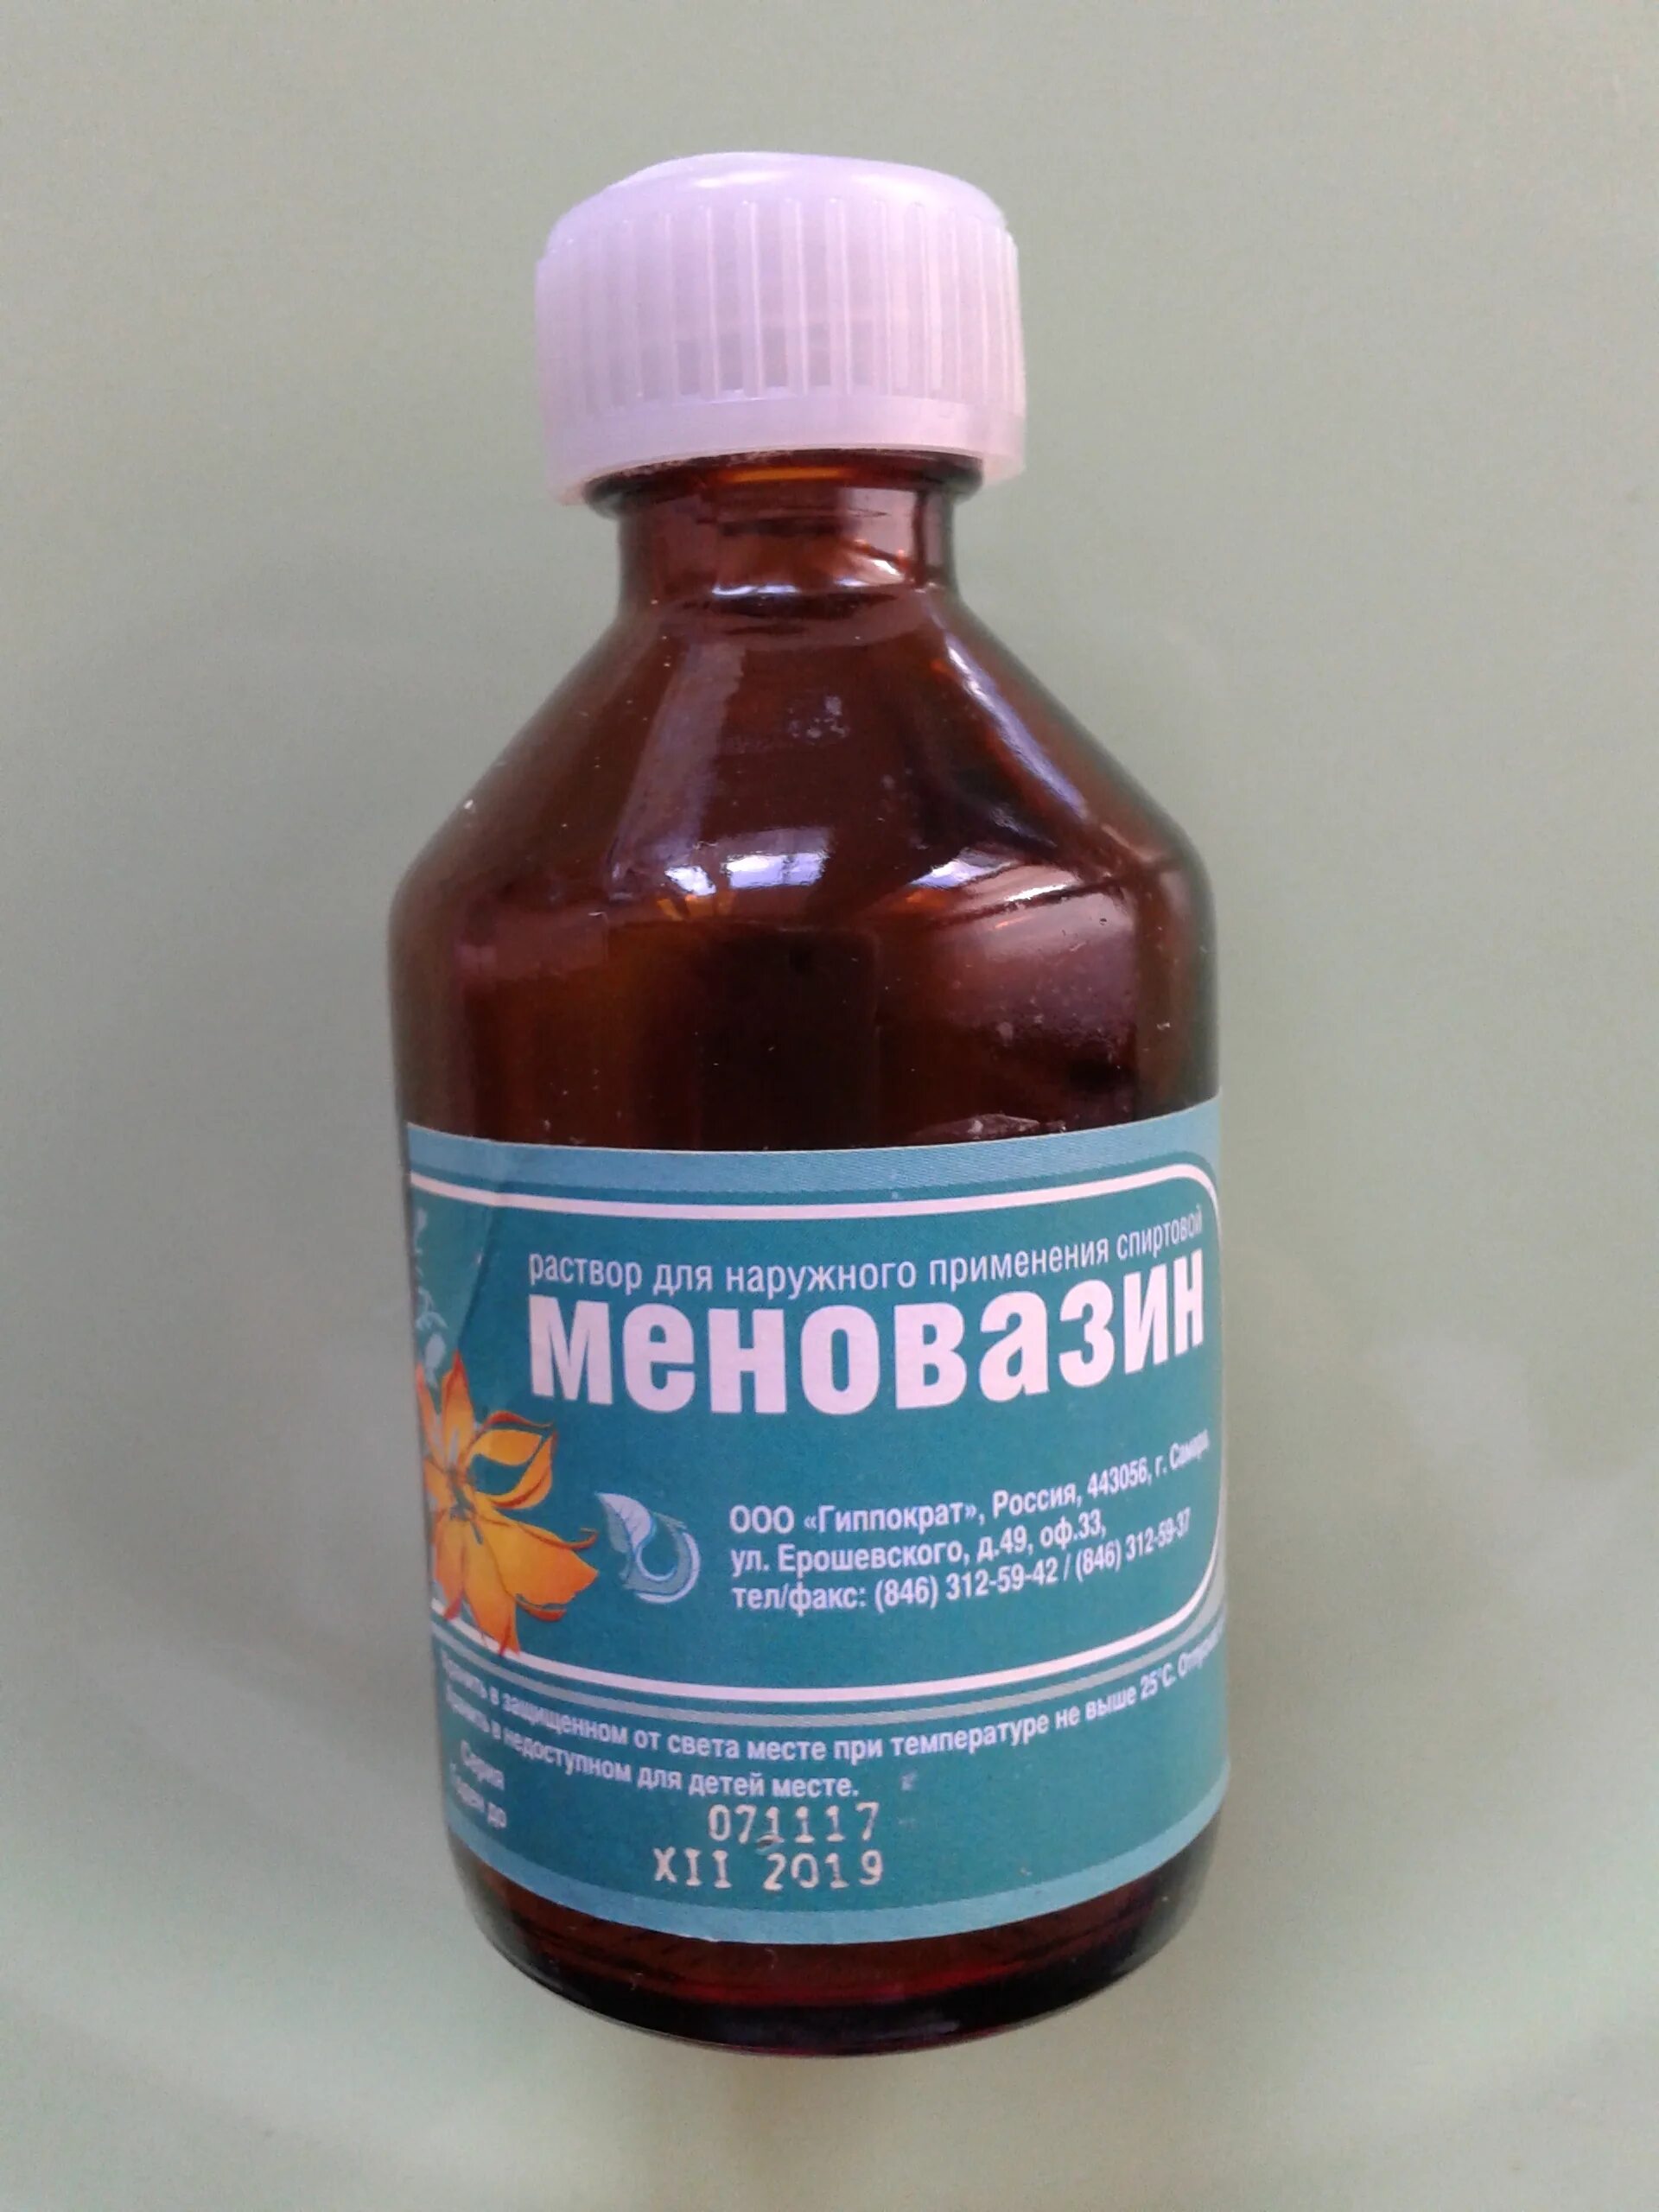 Меновазин 2. Раствор для наружного применения. Меновазин раствор. Меновазин раствор наружный. Меновазин раствор можно